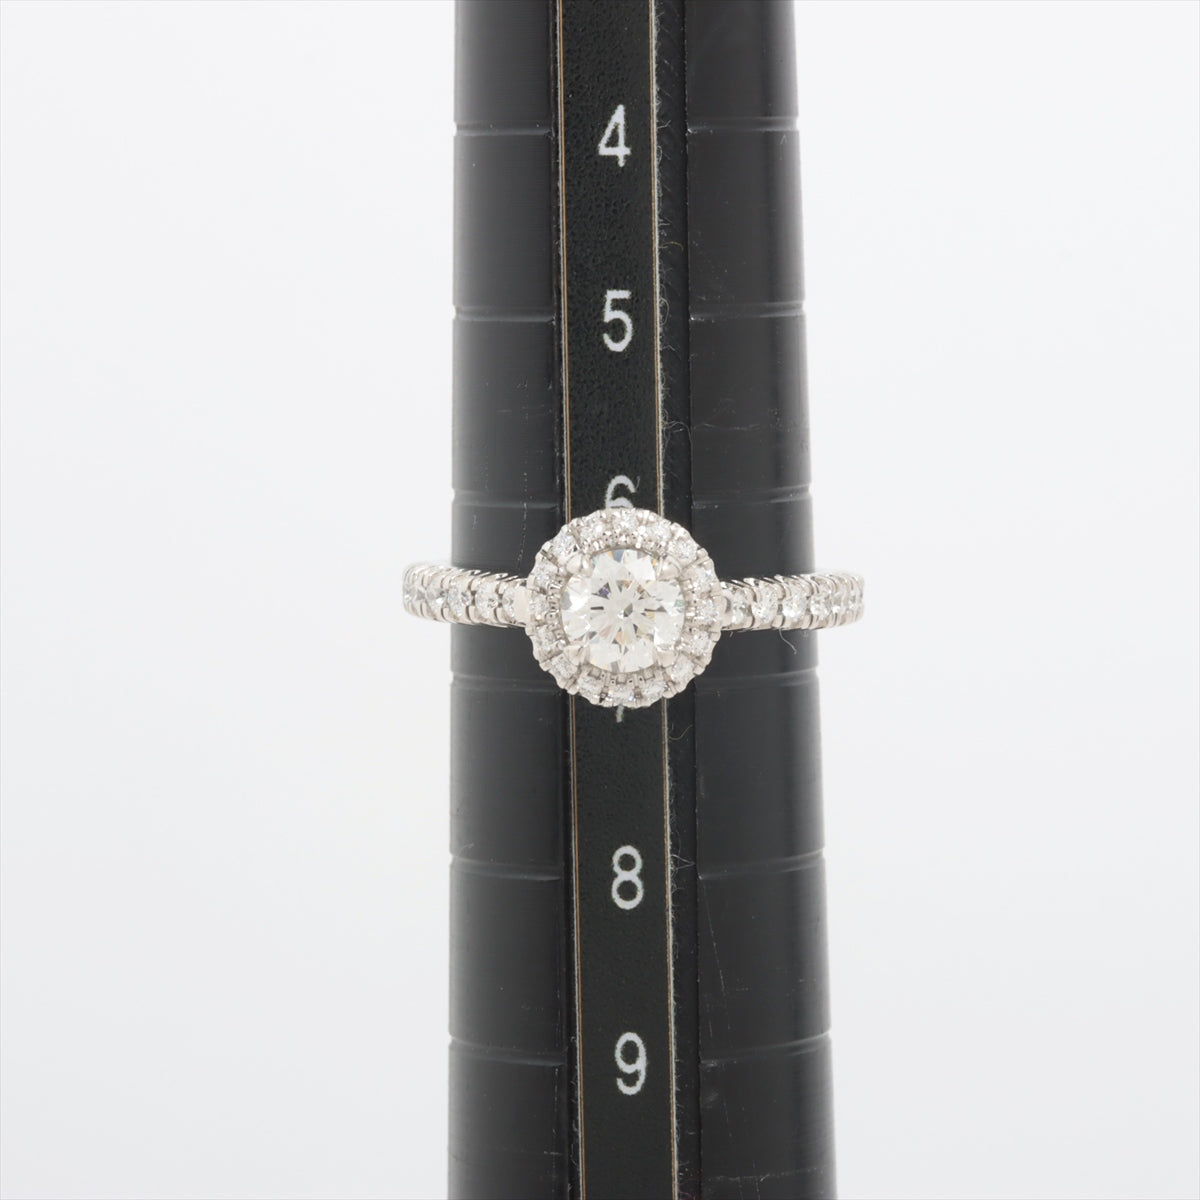 Cartier Destiné diamond rings Pt950 4.0g 0.42 47